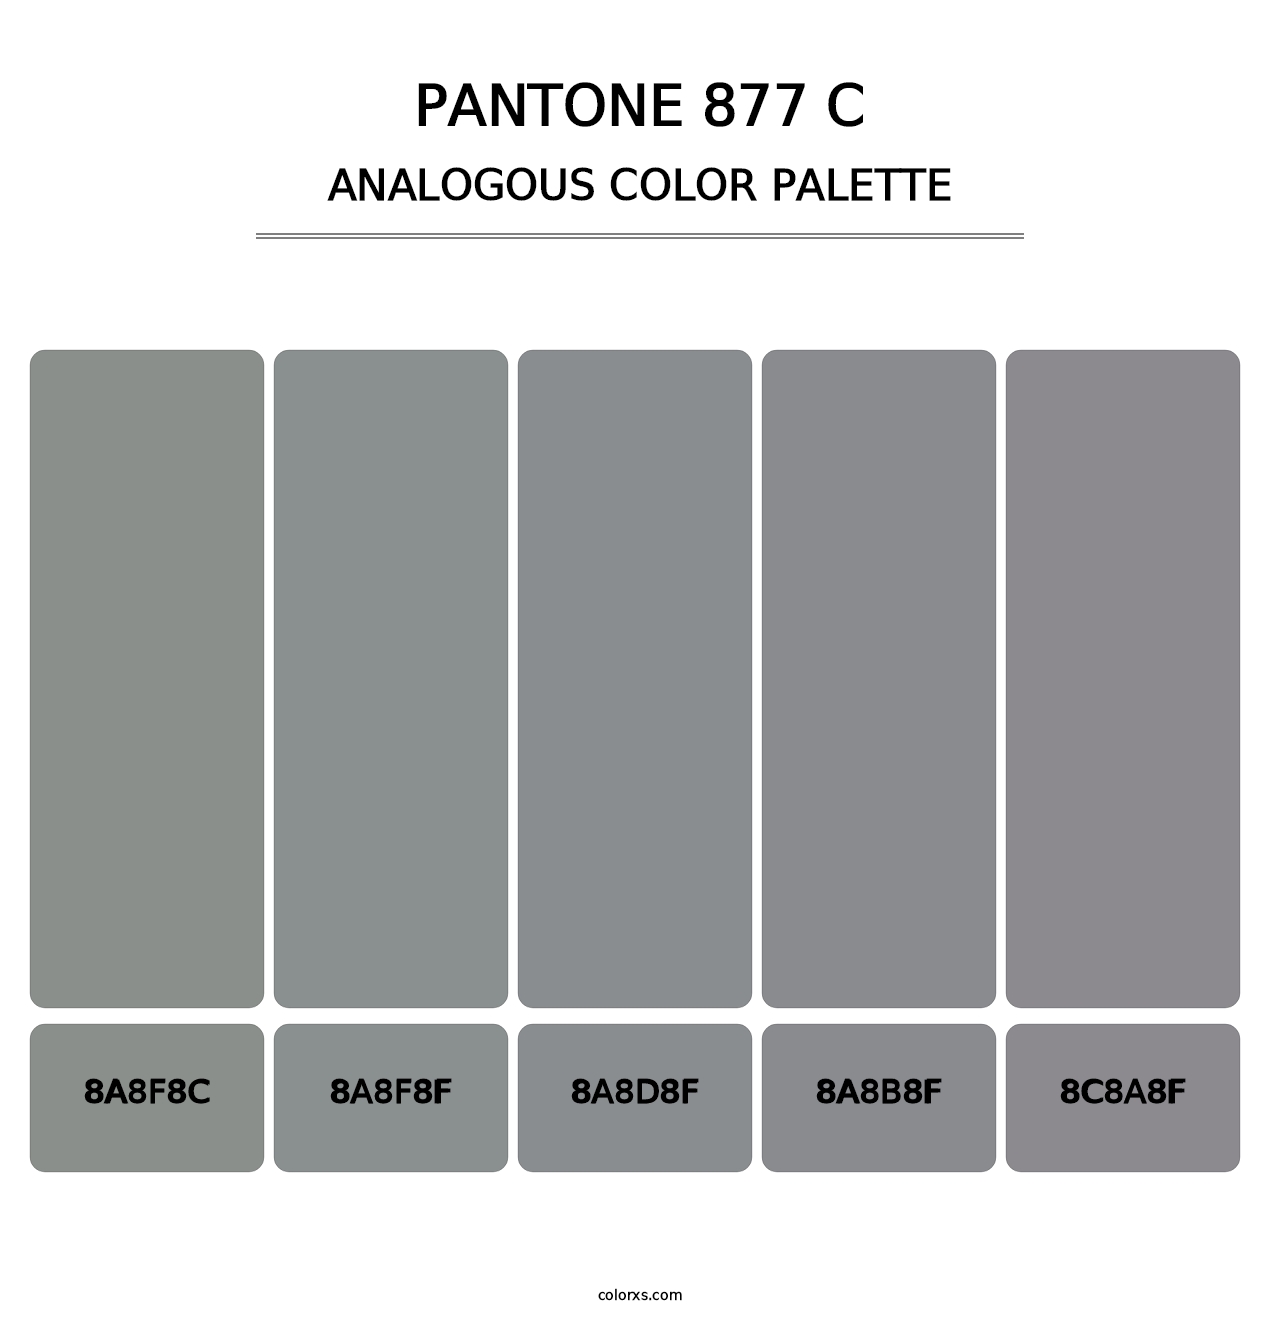 PANTONE 877 C - Analogous Color Palette